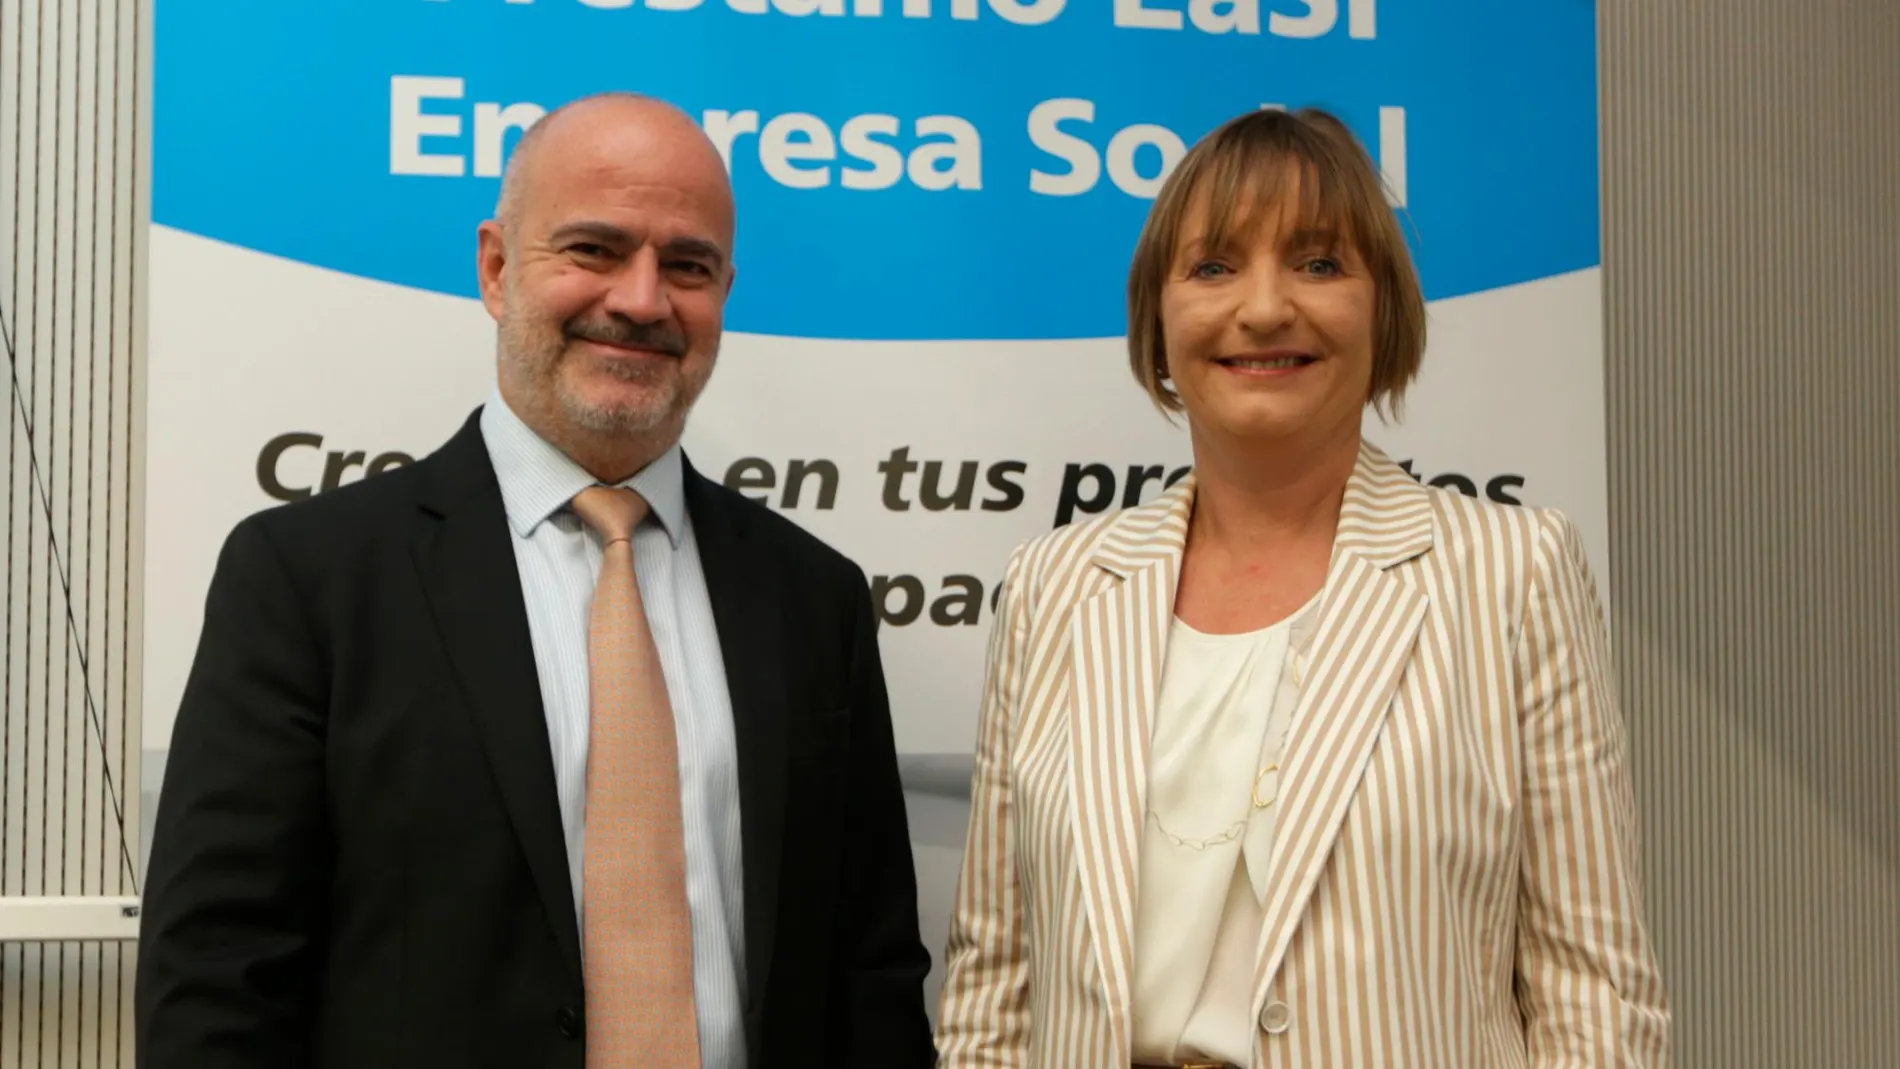 Alberto López, Director General de MicroBank y María Jesús Catalá, Directora Territorial de CaixaBank en Andalucía Occidental / La Razón